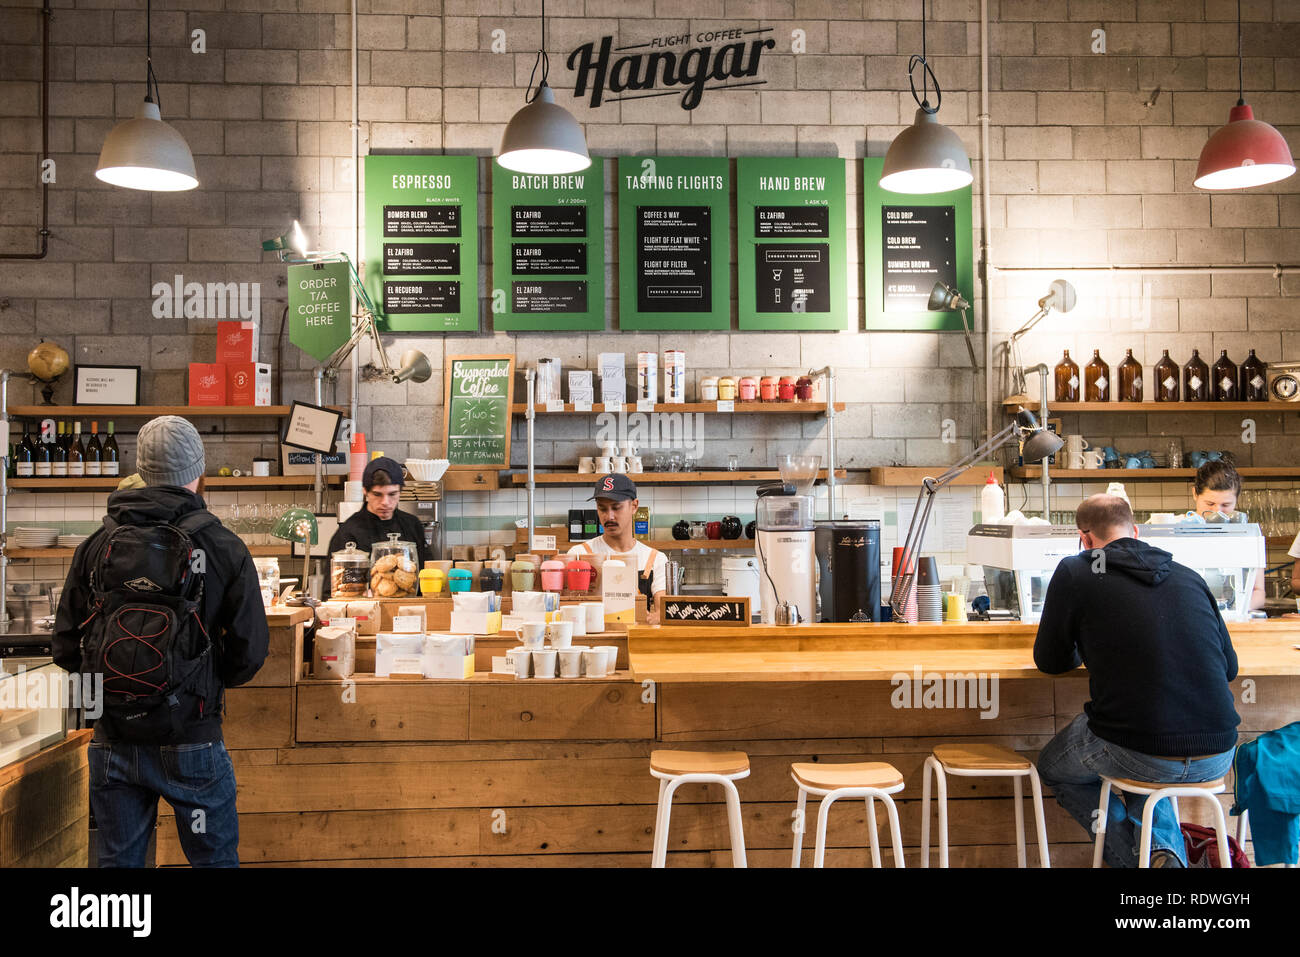 Der Flug/Hangar ist eine Umhüllung cafe Haus aufgebrühten Kaffee, Sandwiches & Licht bei 119 Dixon St in Te Aro, Wellington, Neuseeland isst. Stockfoto